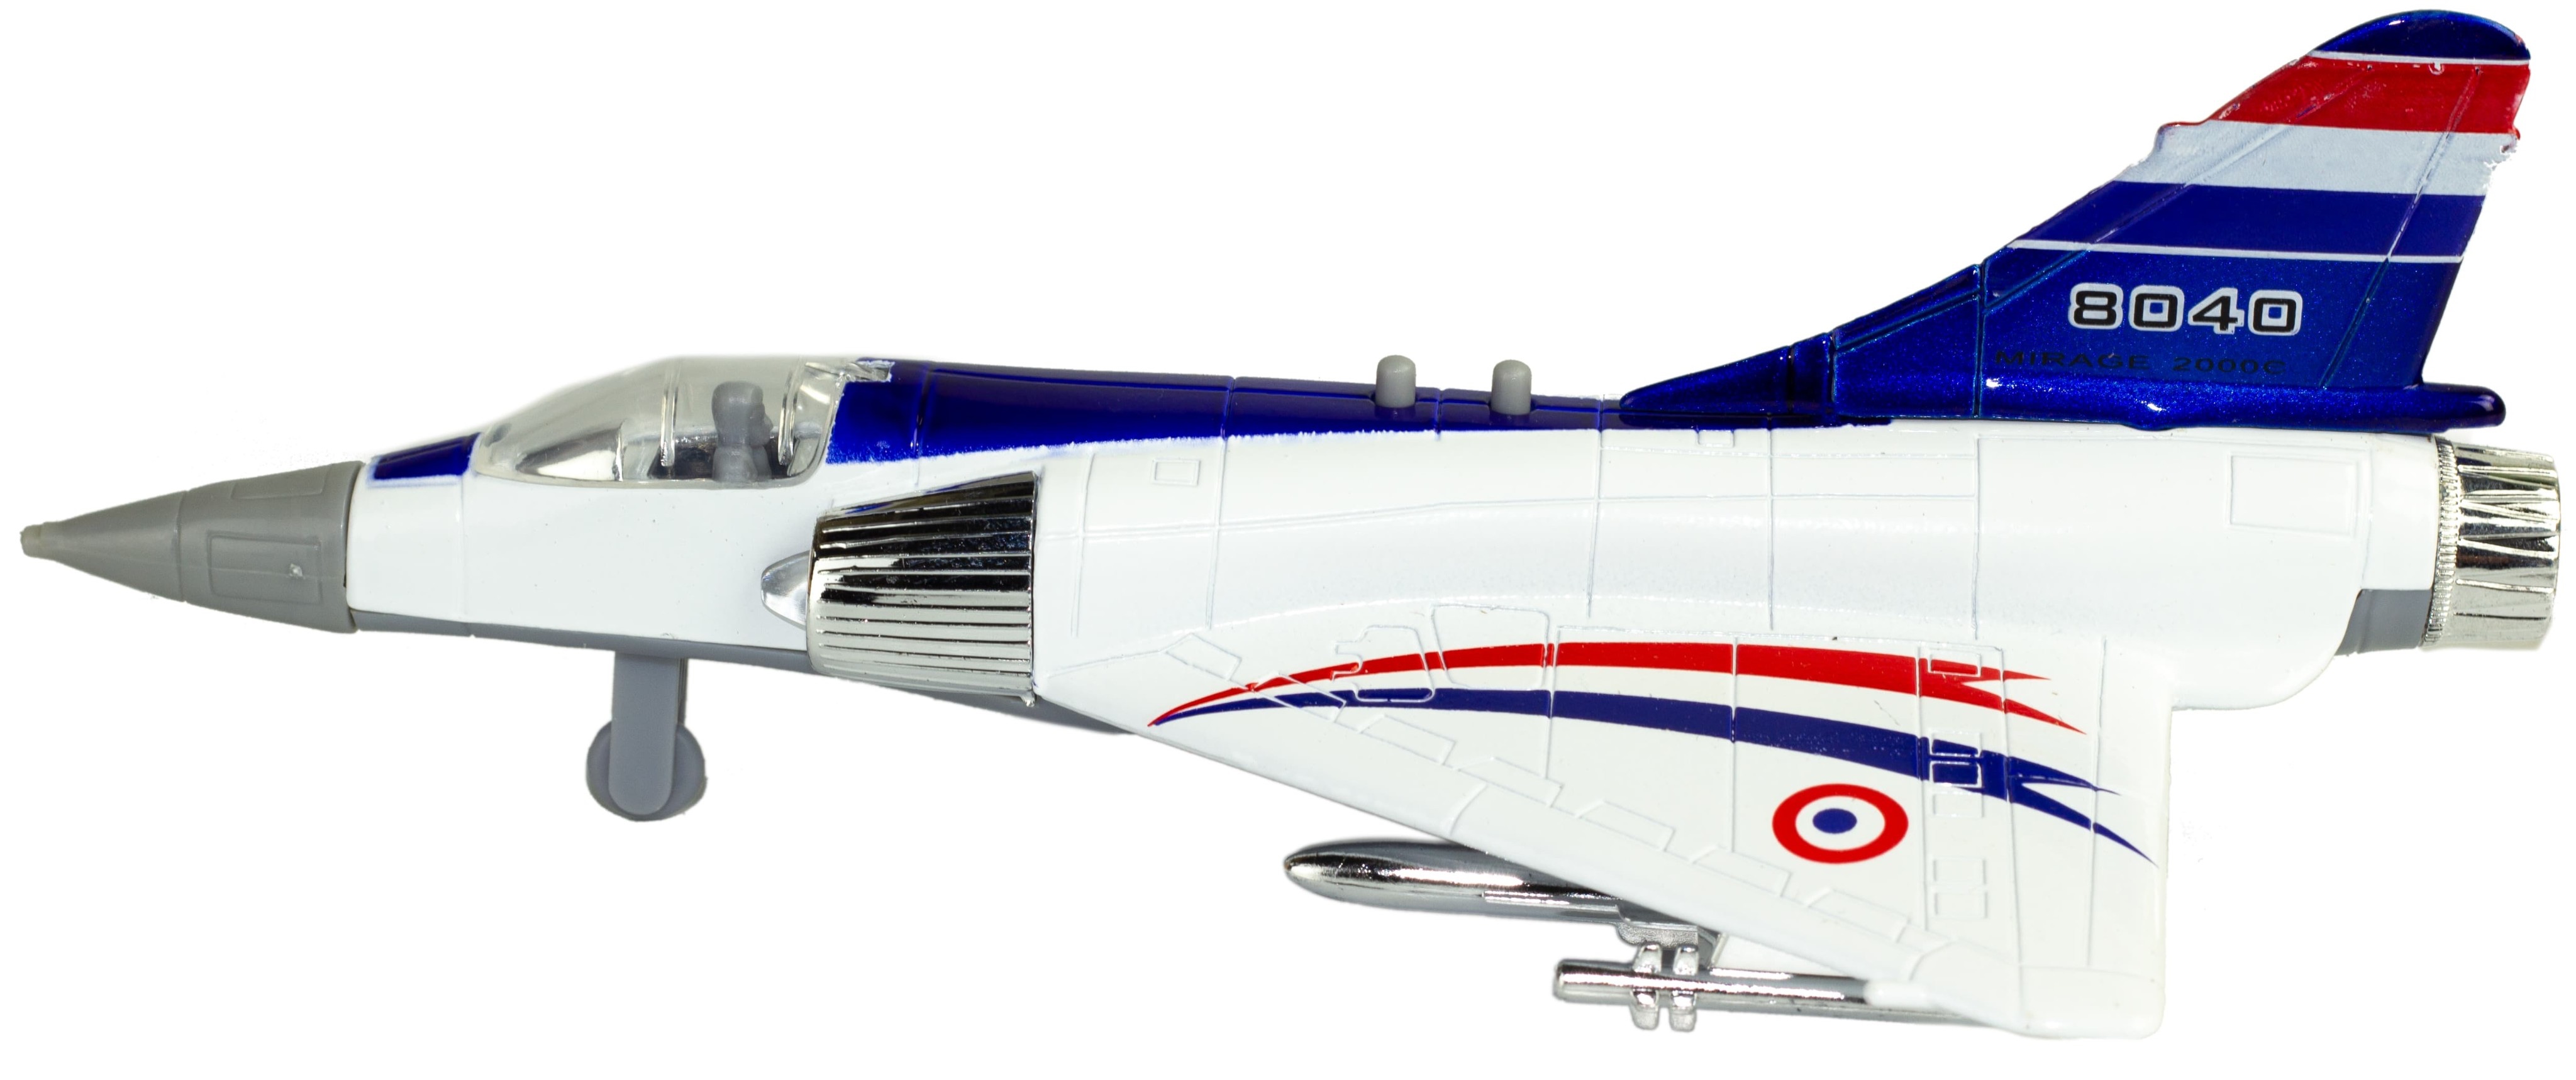 Металлический военный самолет «Sonic Mirage» 19.5 см. 8040, инерционный, свет, звук / Бело-синий